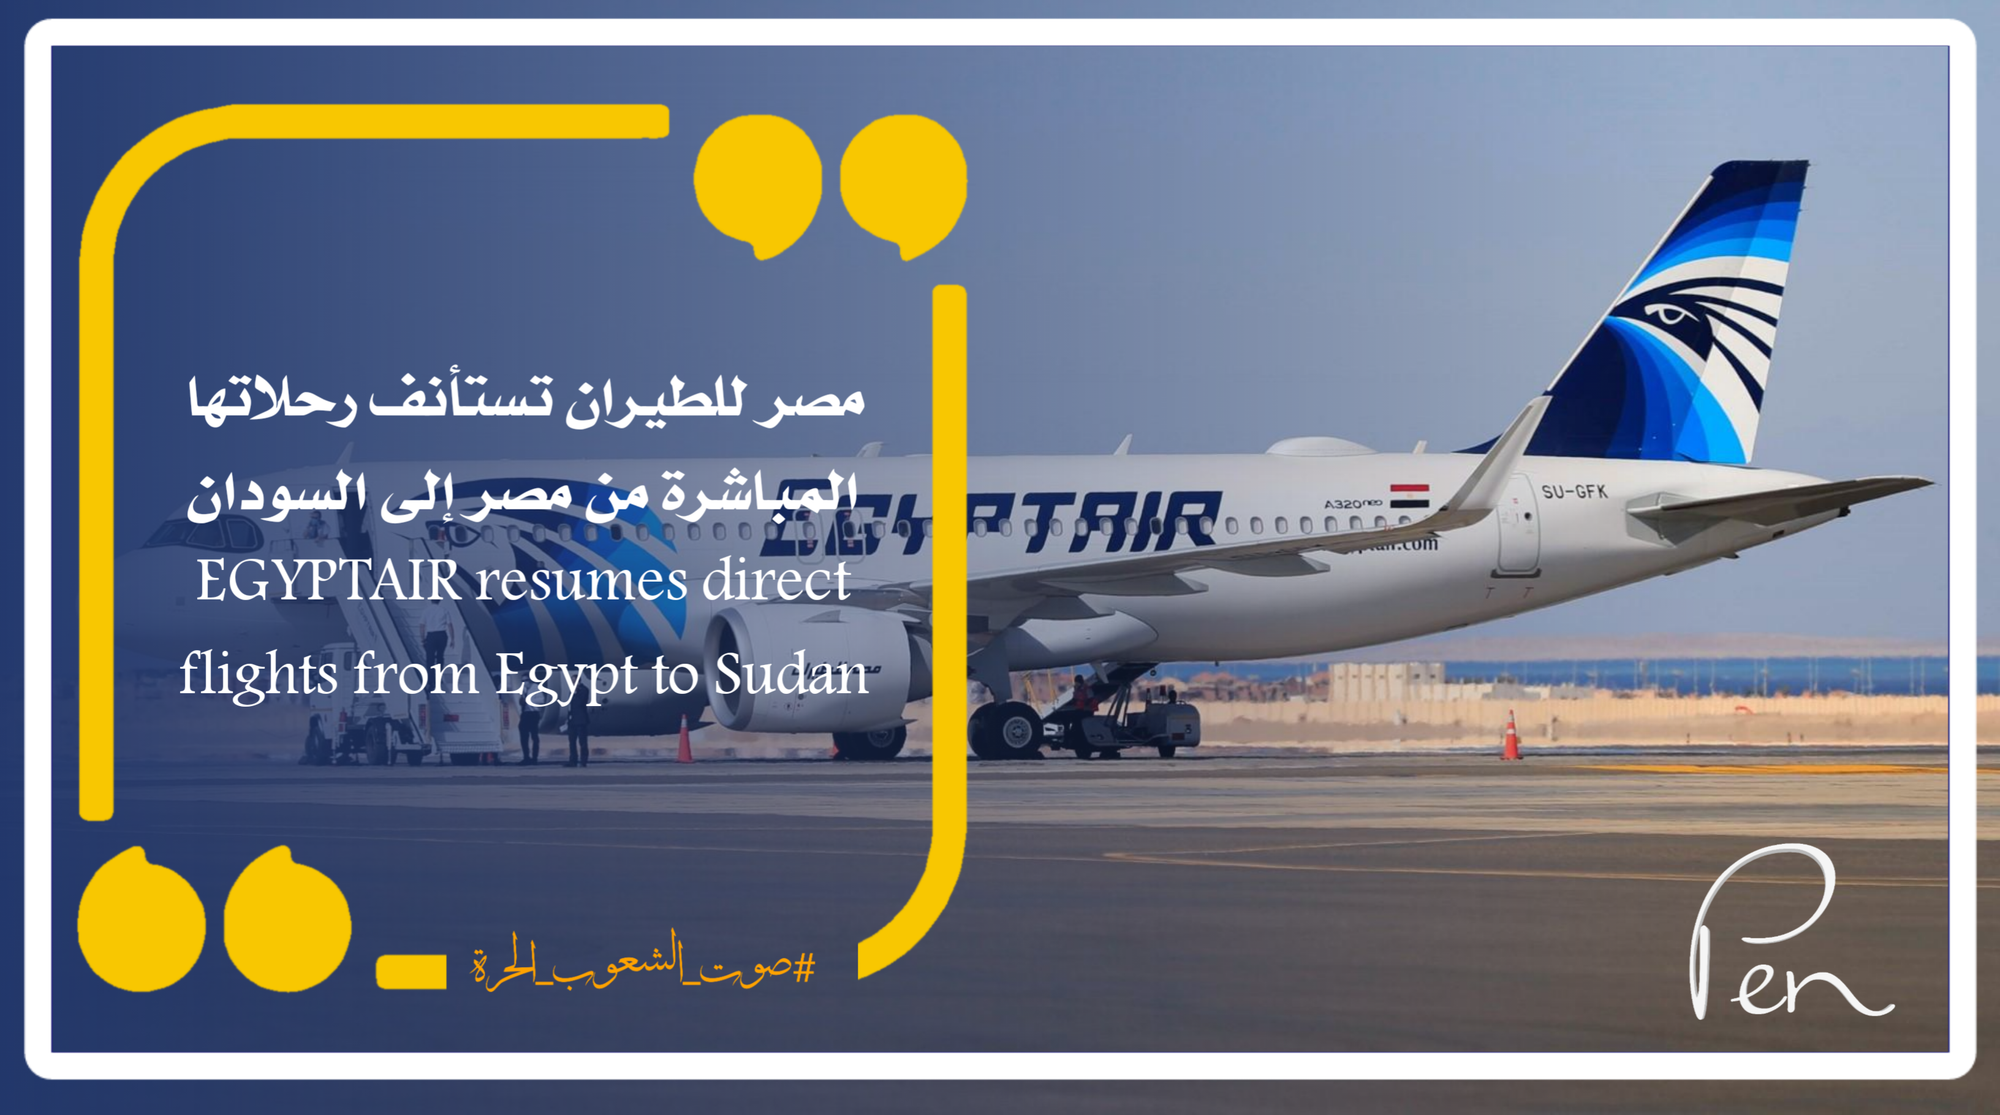 مصر للطيران تستأنف رحلاتها المباشرة من مصر إلى السودان